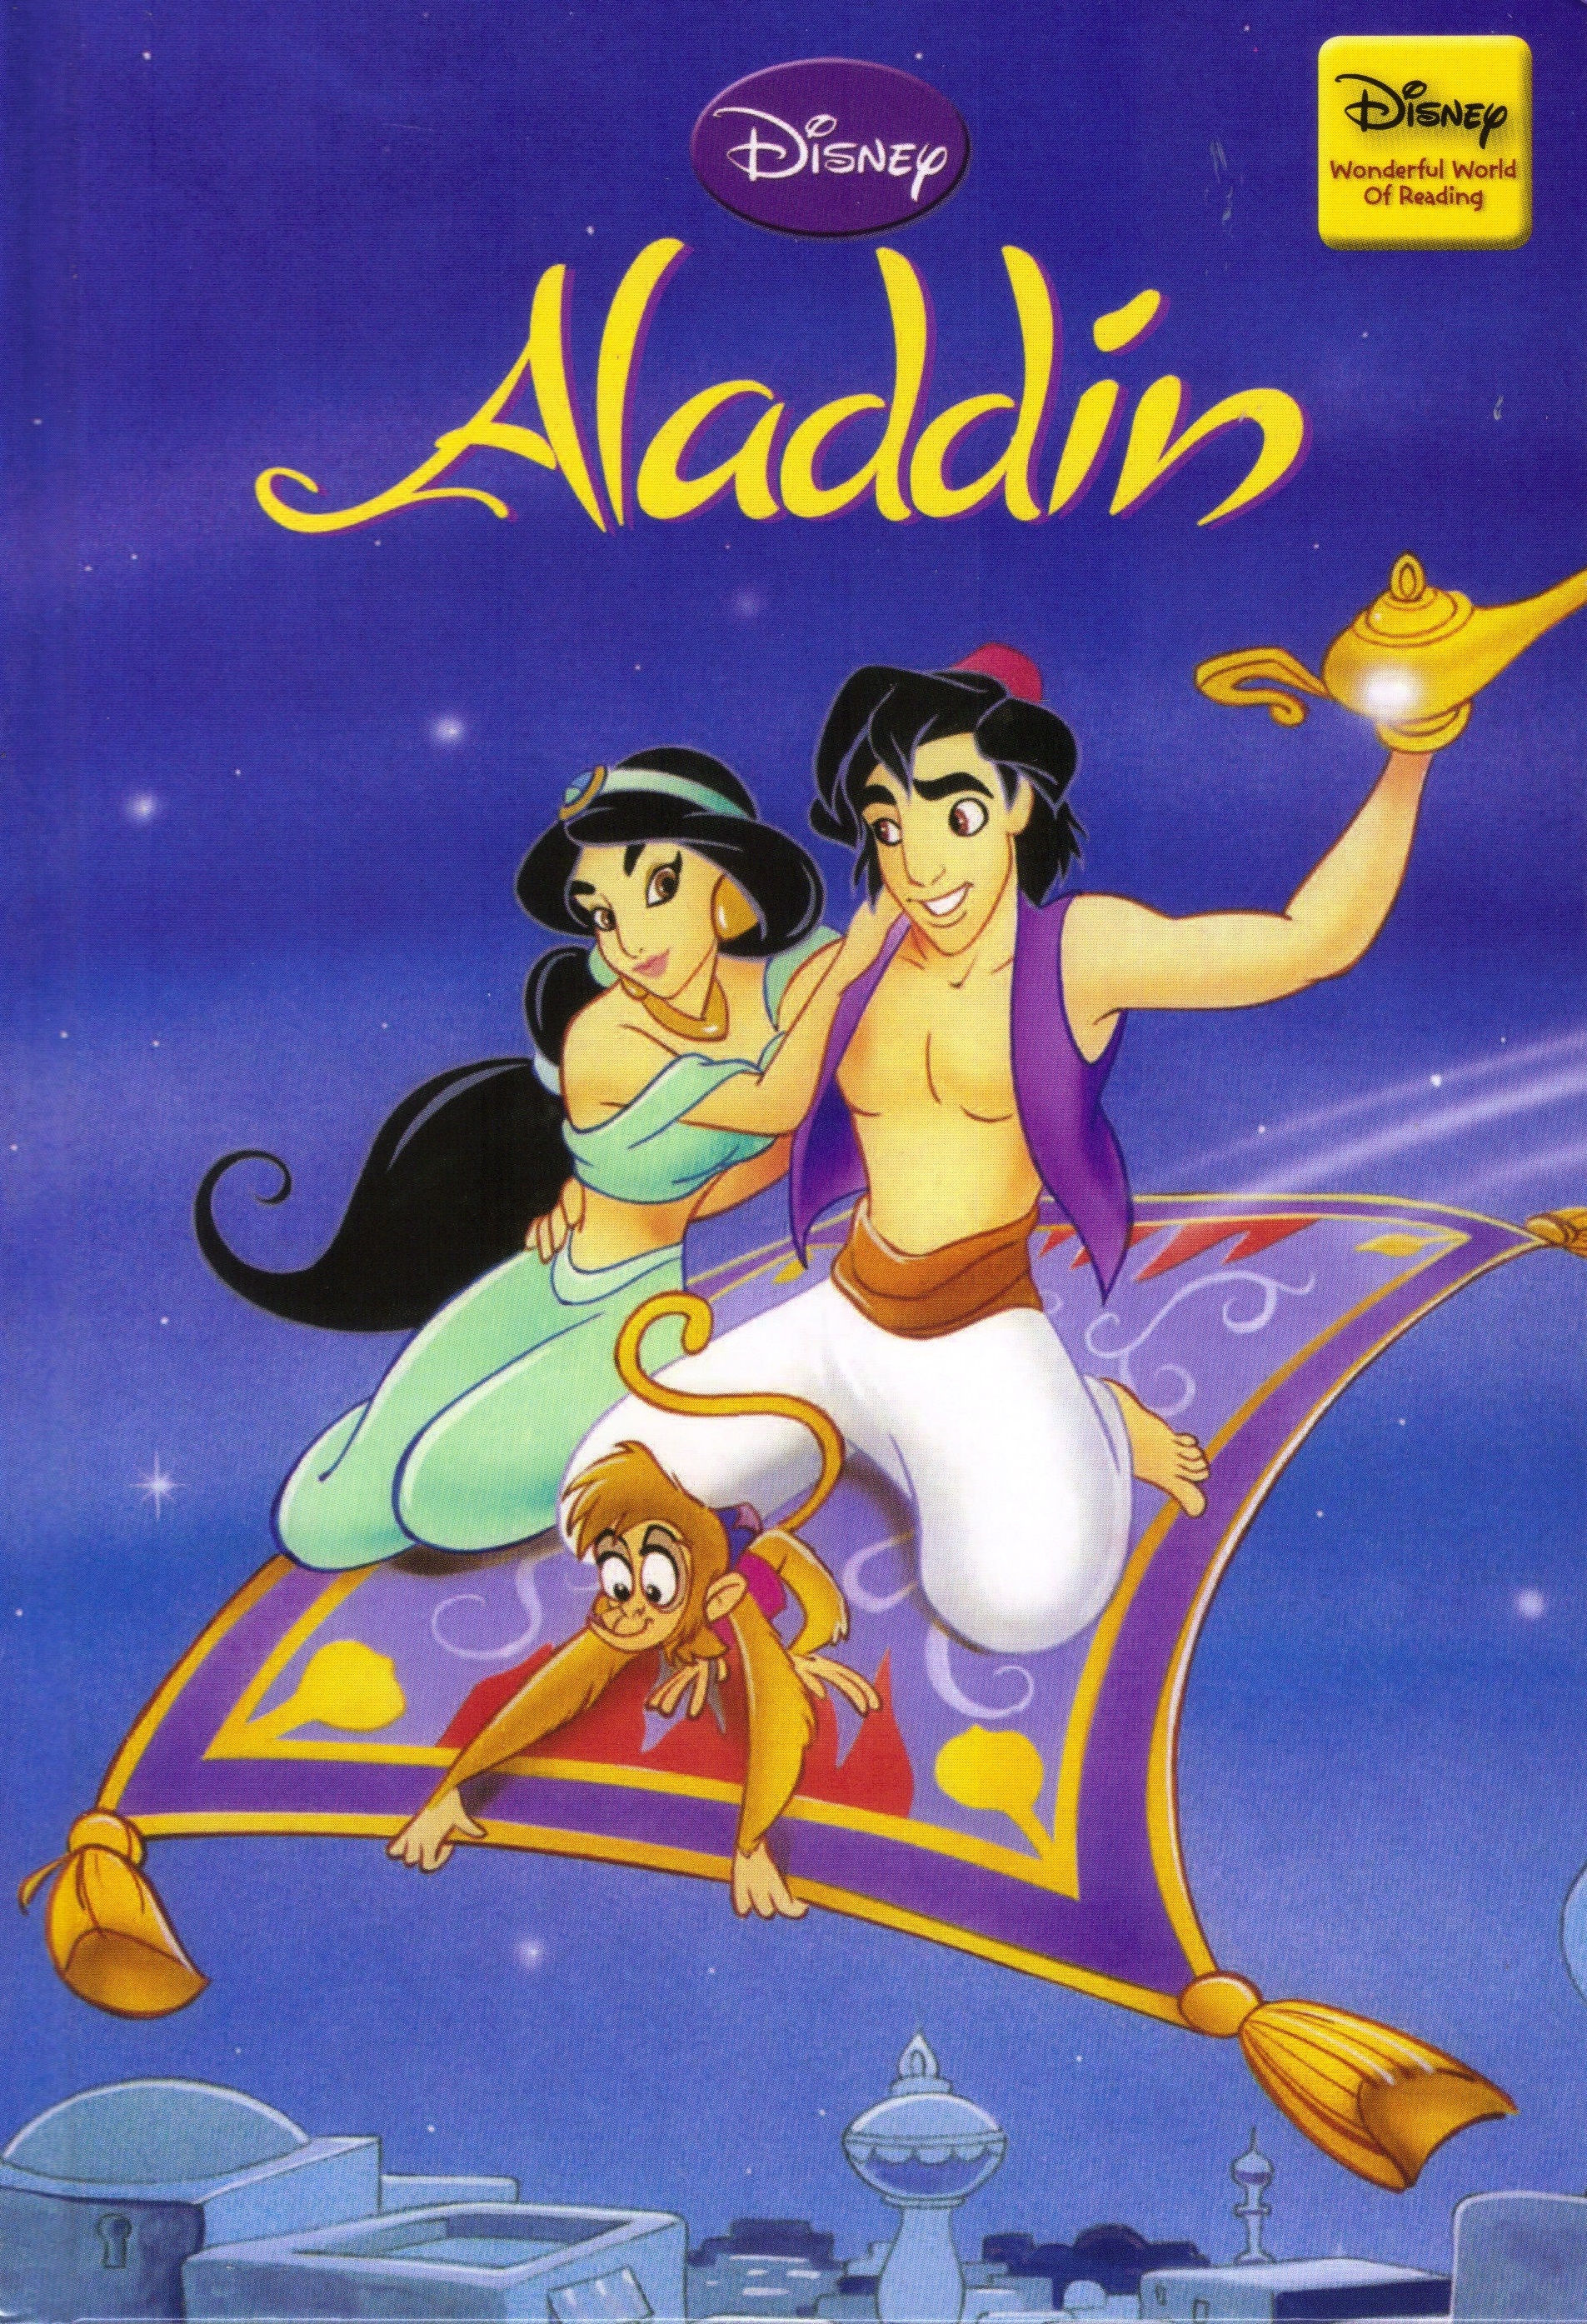 Disney's Aladdin Backgrounds, Compatible - PC, Mobile, Gadgets| 1905x2789 px